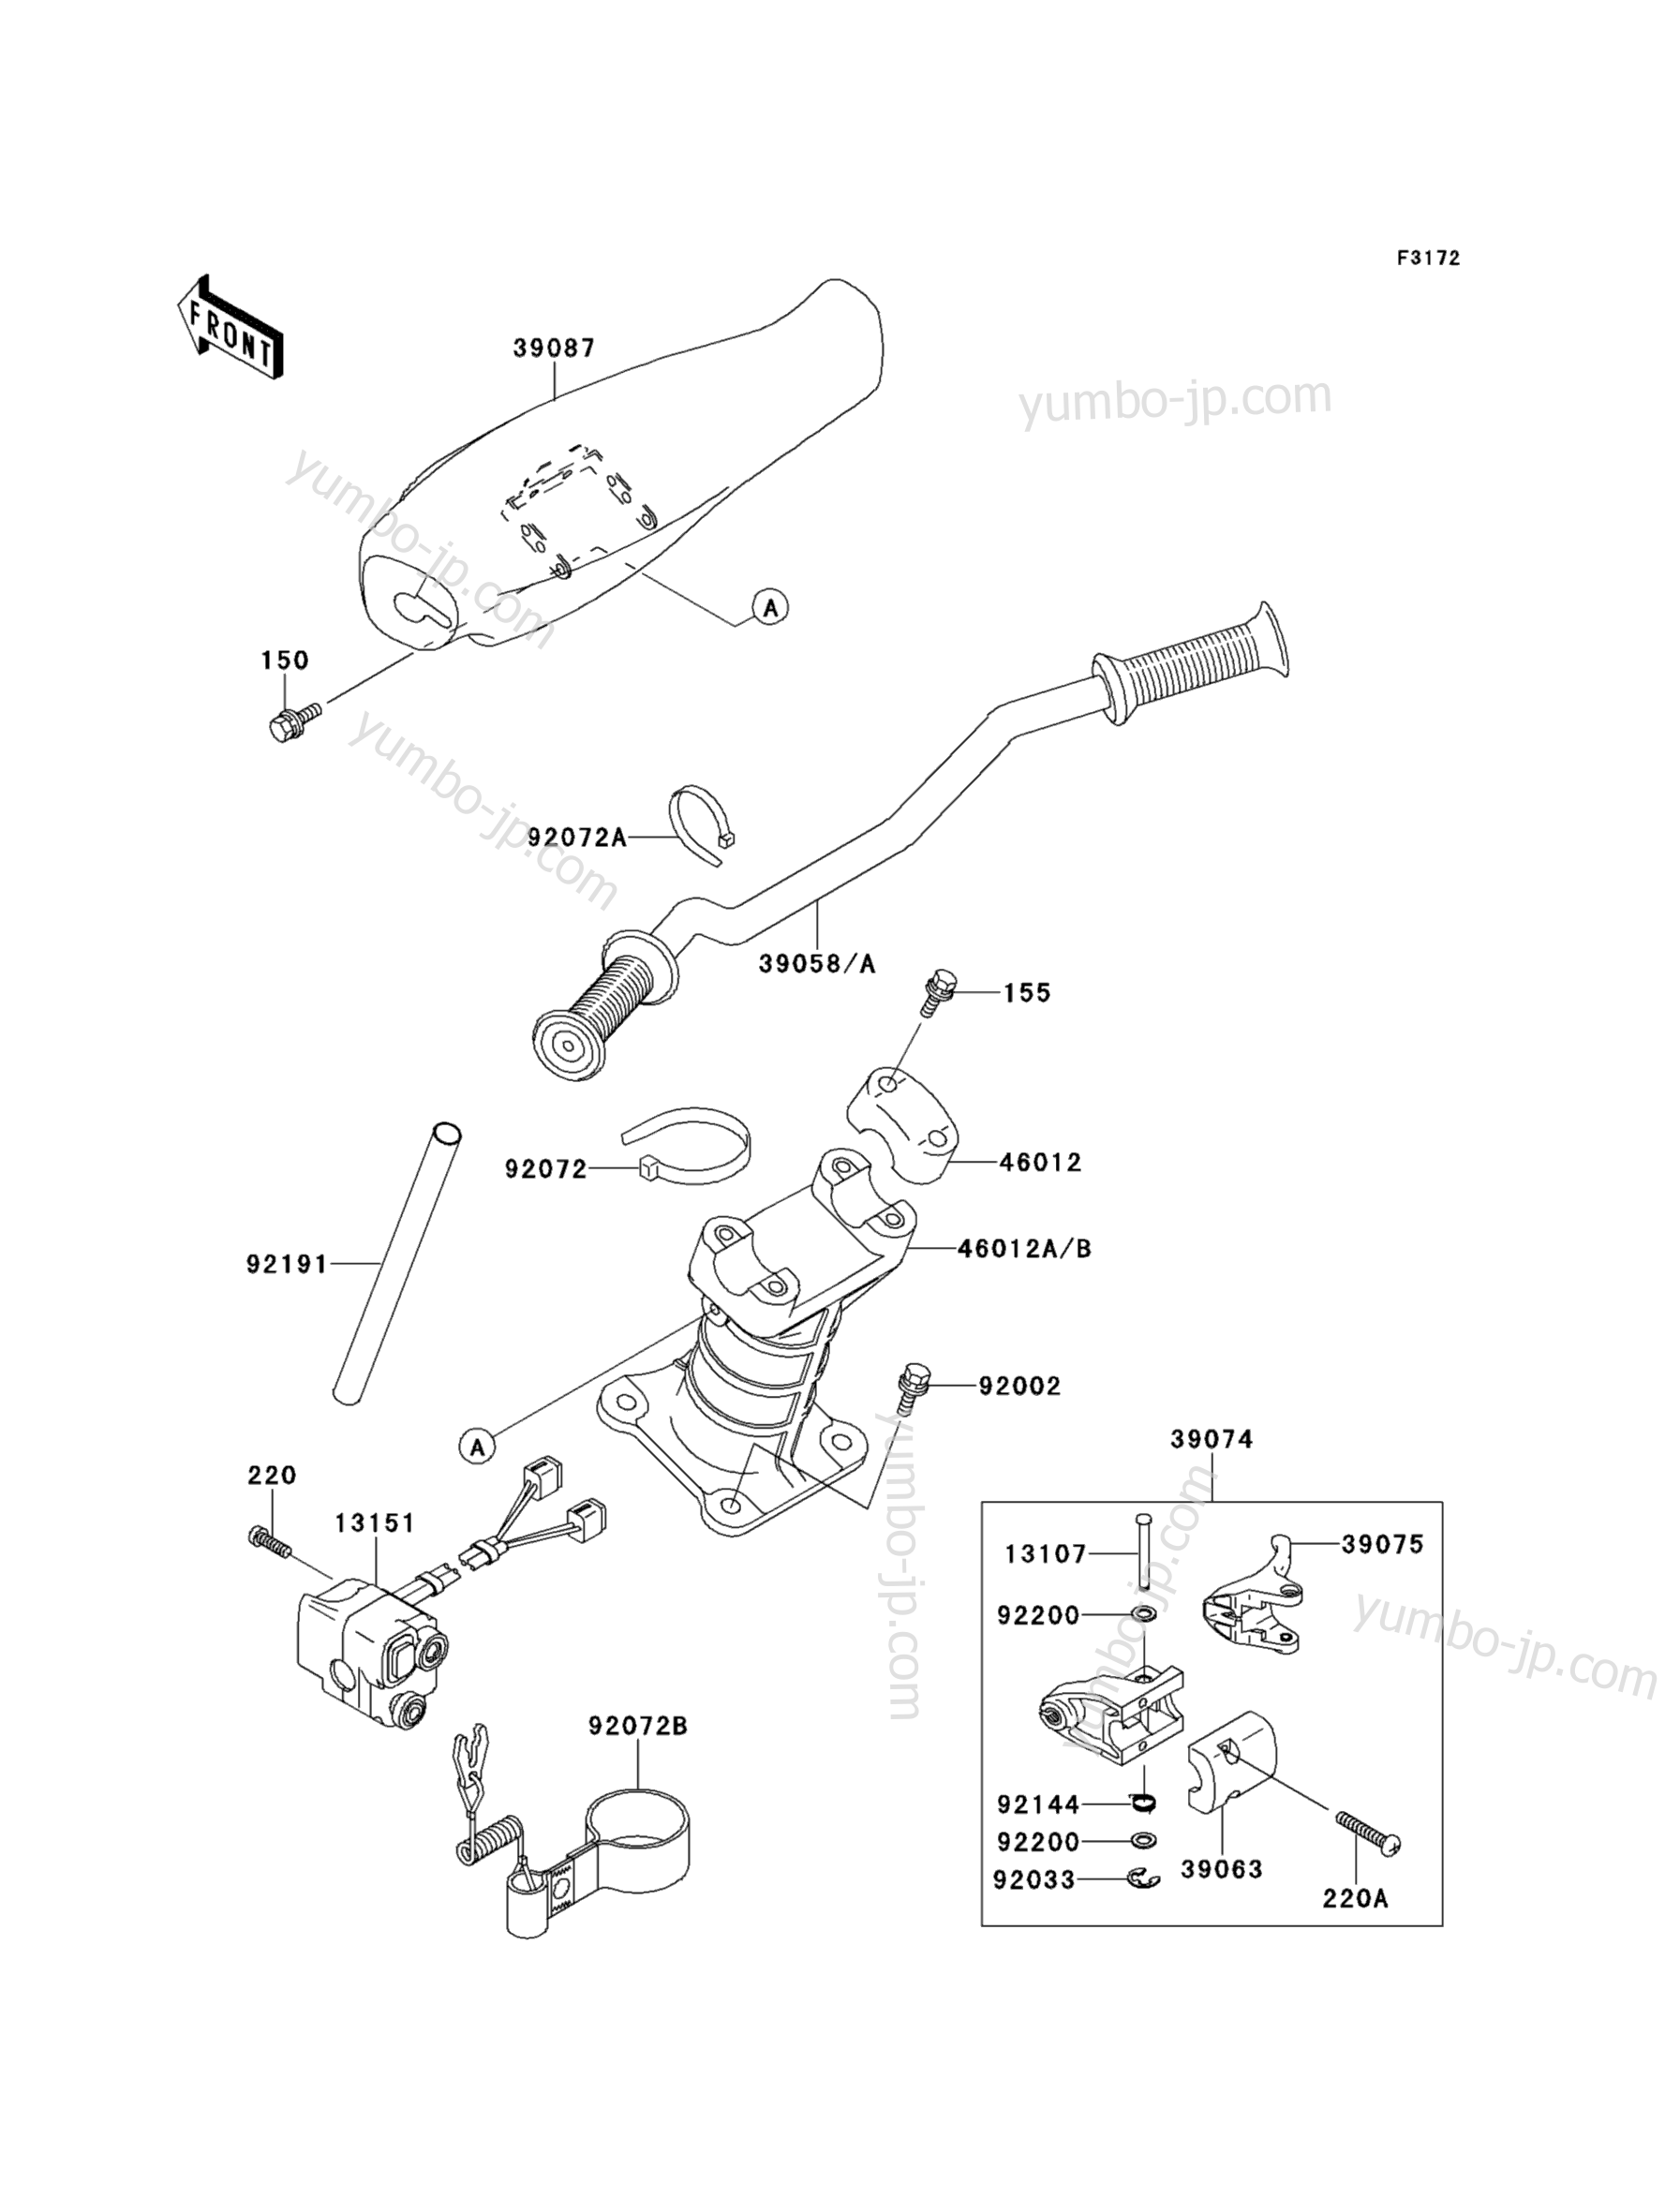 Румпель (рукоятка управления) для гидроциклов KAWASAKI JET SKI 900ZXI (JH900-A2) 1996 г.